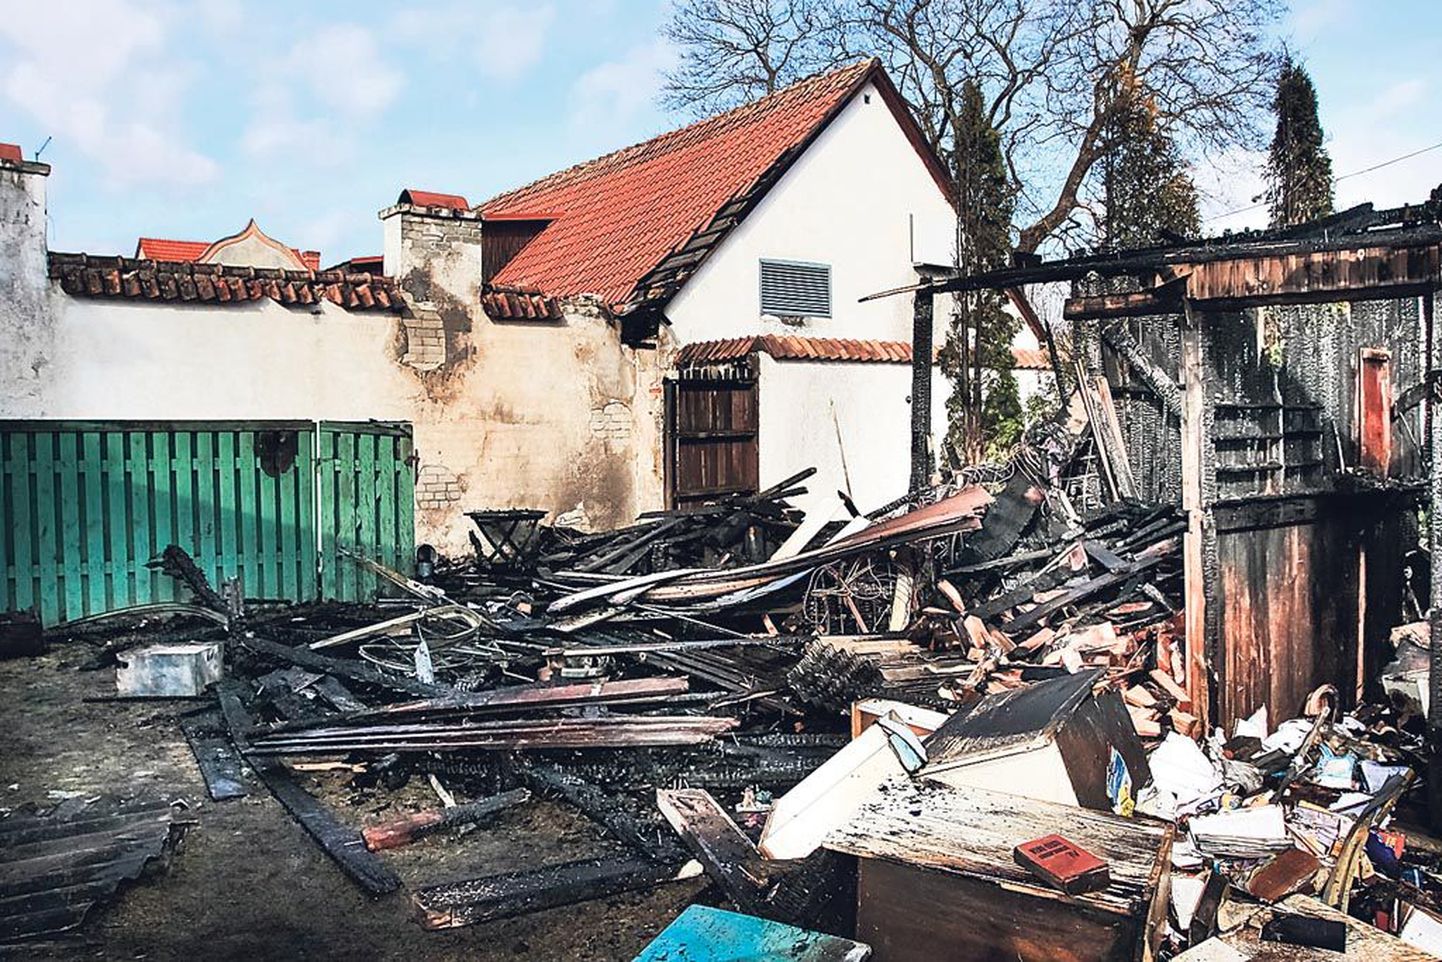 Lahtise leegiga põlenud puukuur süütas kõrval asuva trahteri Postipoiss taguse ala ja katuse. Lisaks purunesid tules pildile mitte jäänud kõrval asuva elumaja esimese korruse aknad.